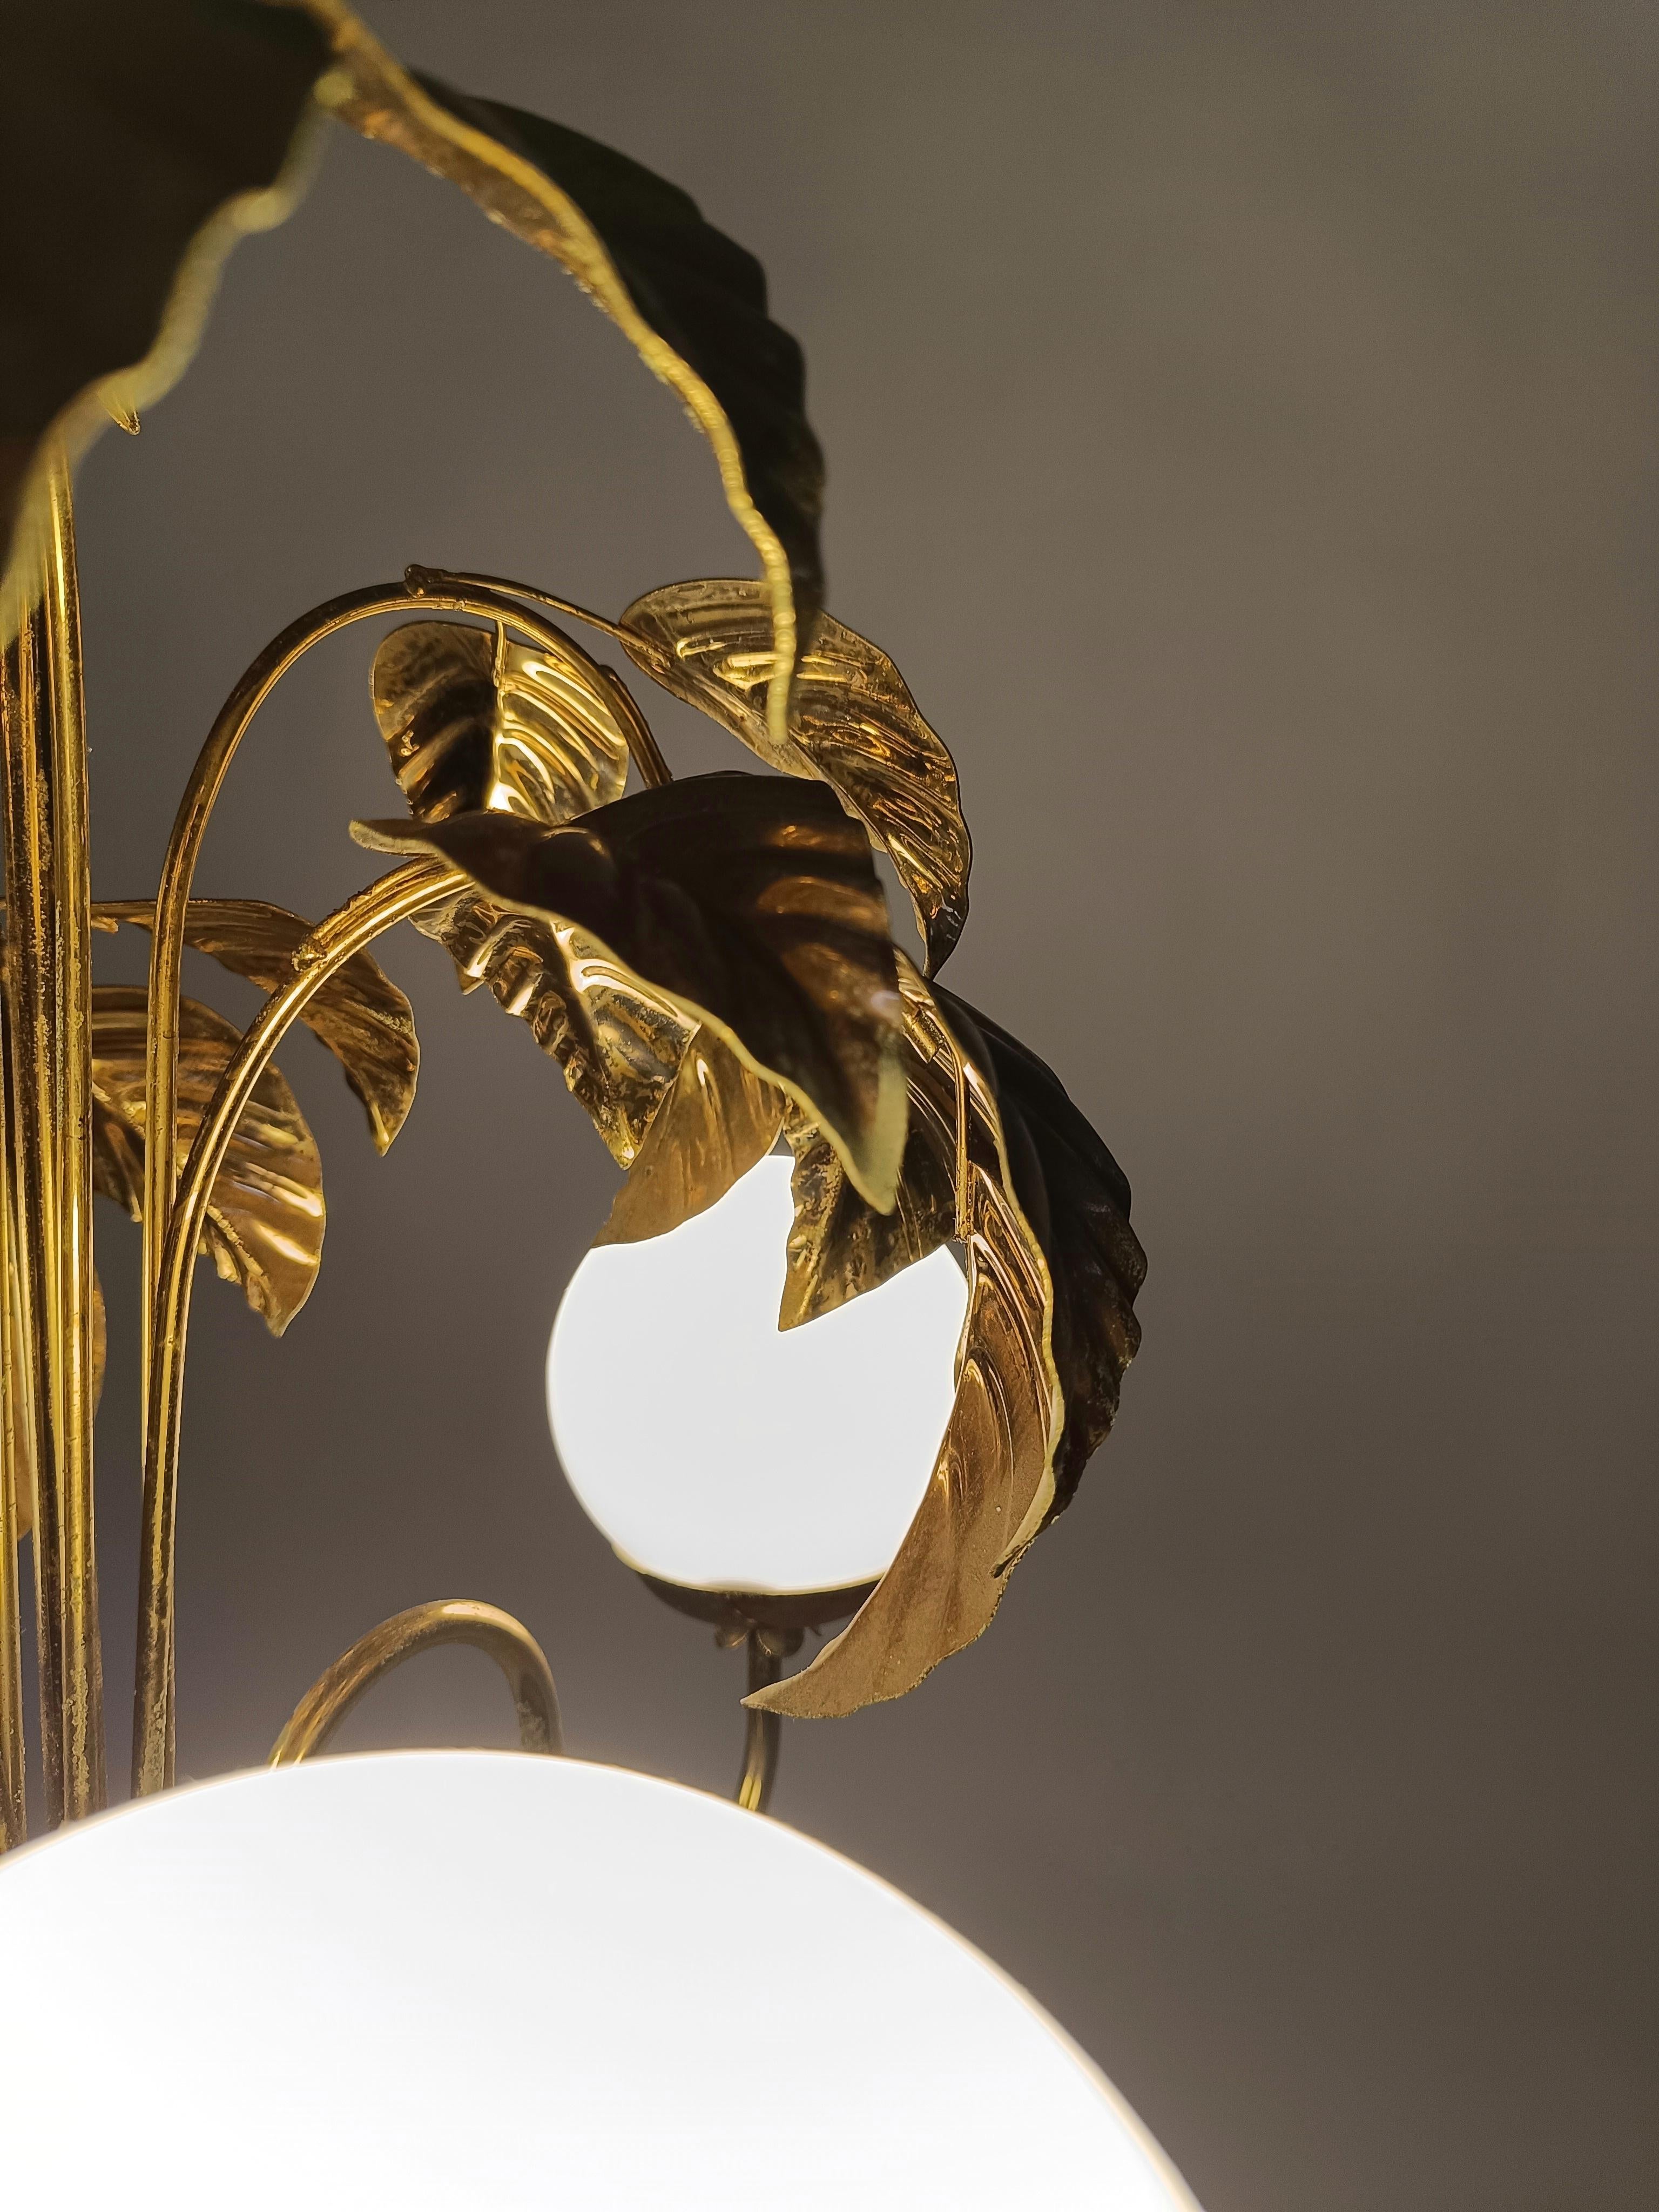 Un lustre fabriqué en Italie entre les années 60 et 70, élégant et très décoratif avec leur motif de feuilles qui grimpent sur le mur comme une plante pothos.

L'élément décoratif feuillu et doré a connu un grand succès dans les années 70. Des